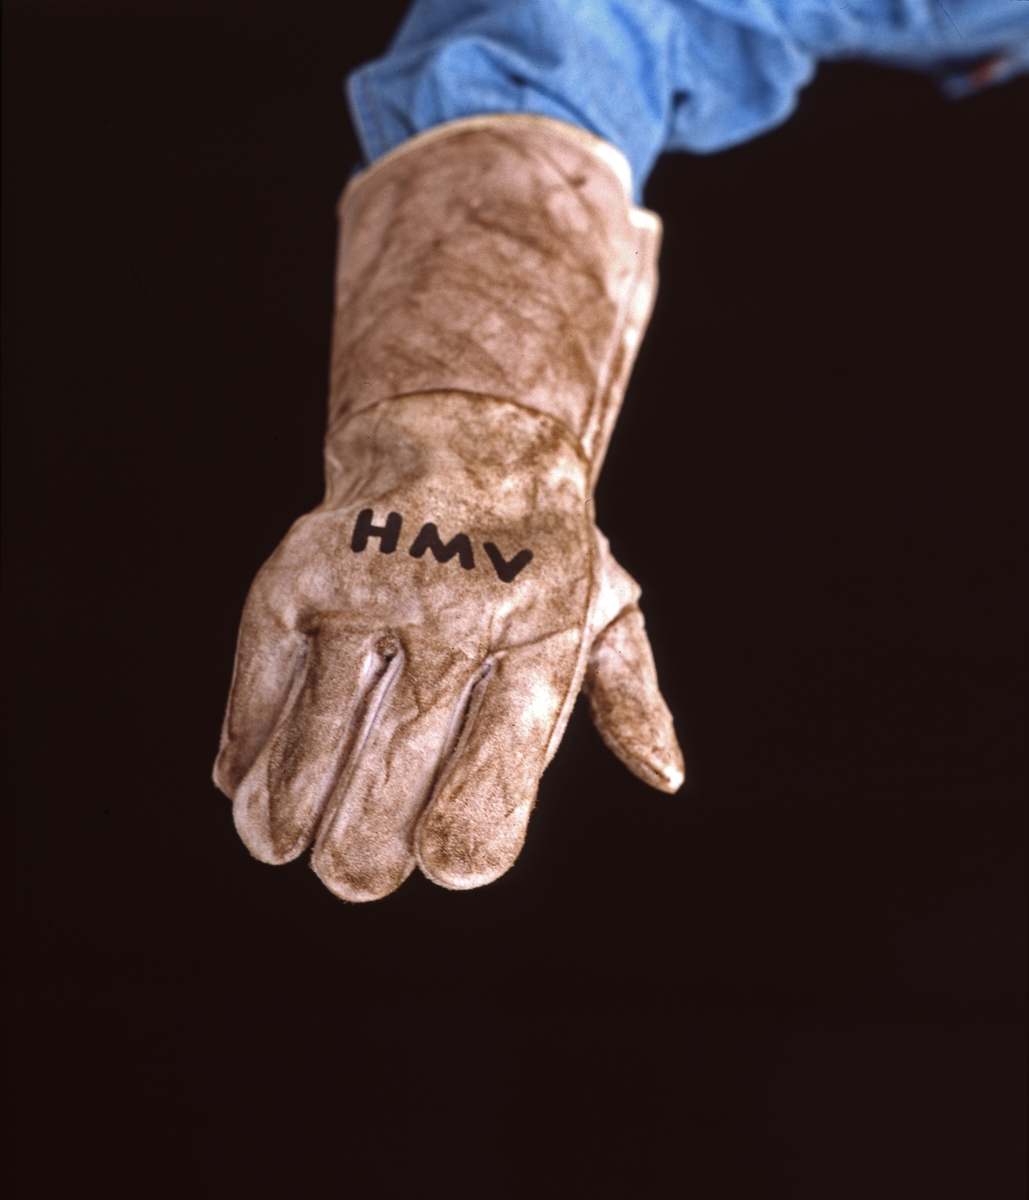 H.M.V. Arbeidshanske med HMV påtrykket. Reklamefoto.